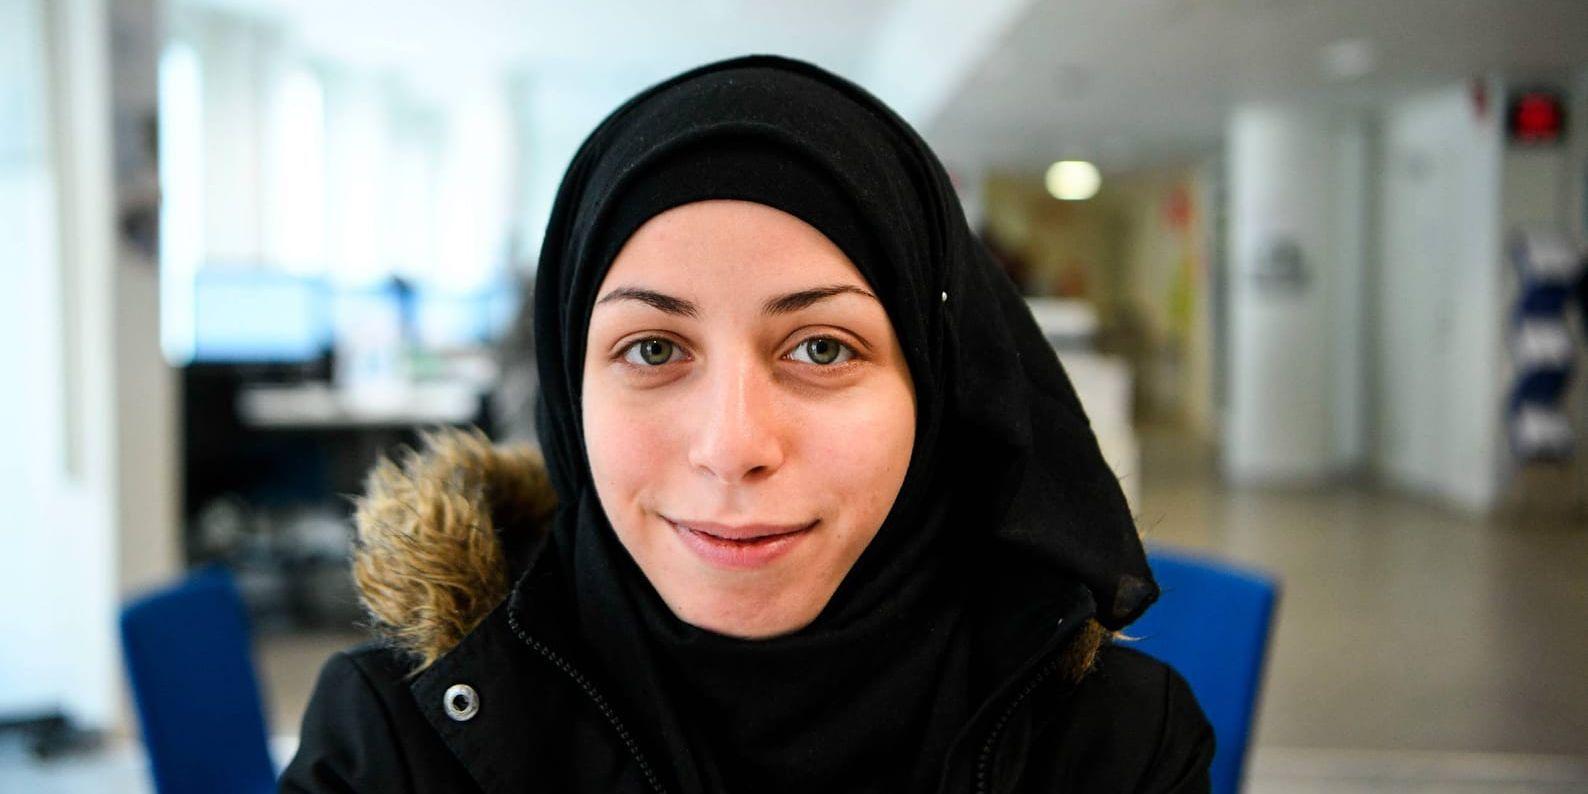 Nour Ghnaim, 24, kom till Sverige från Syrien för tre år sedan. Hon talar svenska, men har hittills bara lärt sig via Youtube. Nu är planen att försöka kombinera deltidsjobb med SFI-studier.